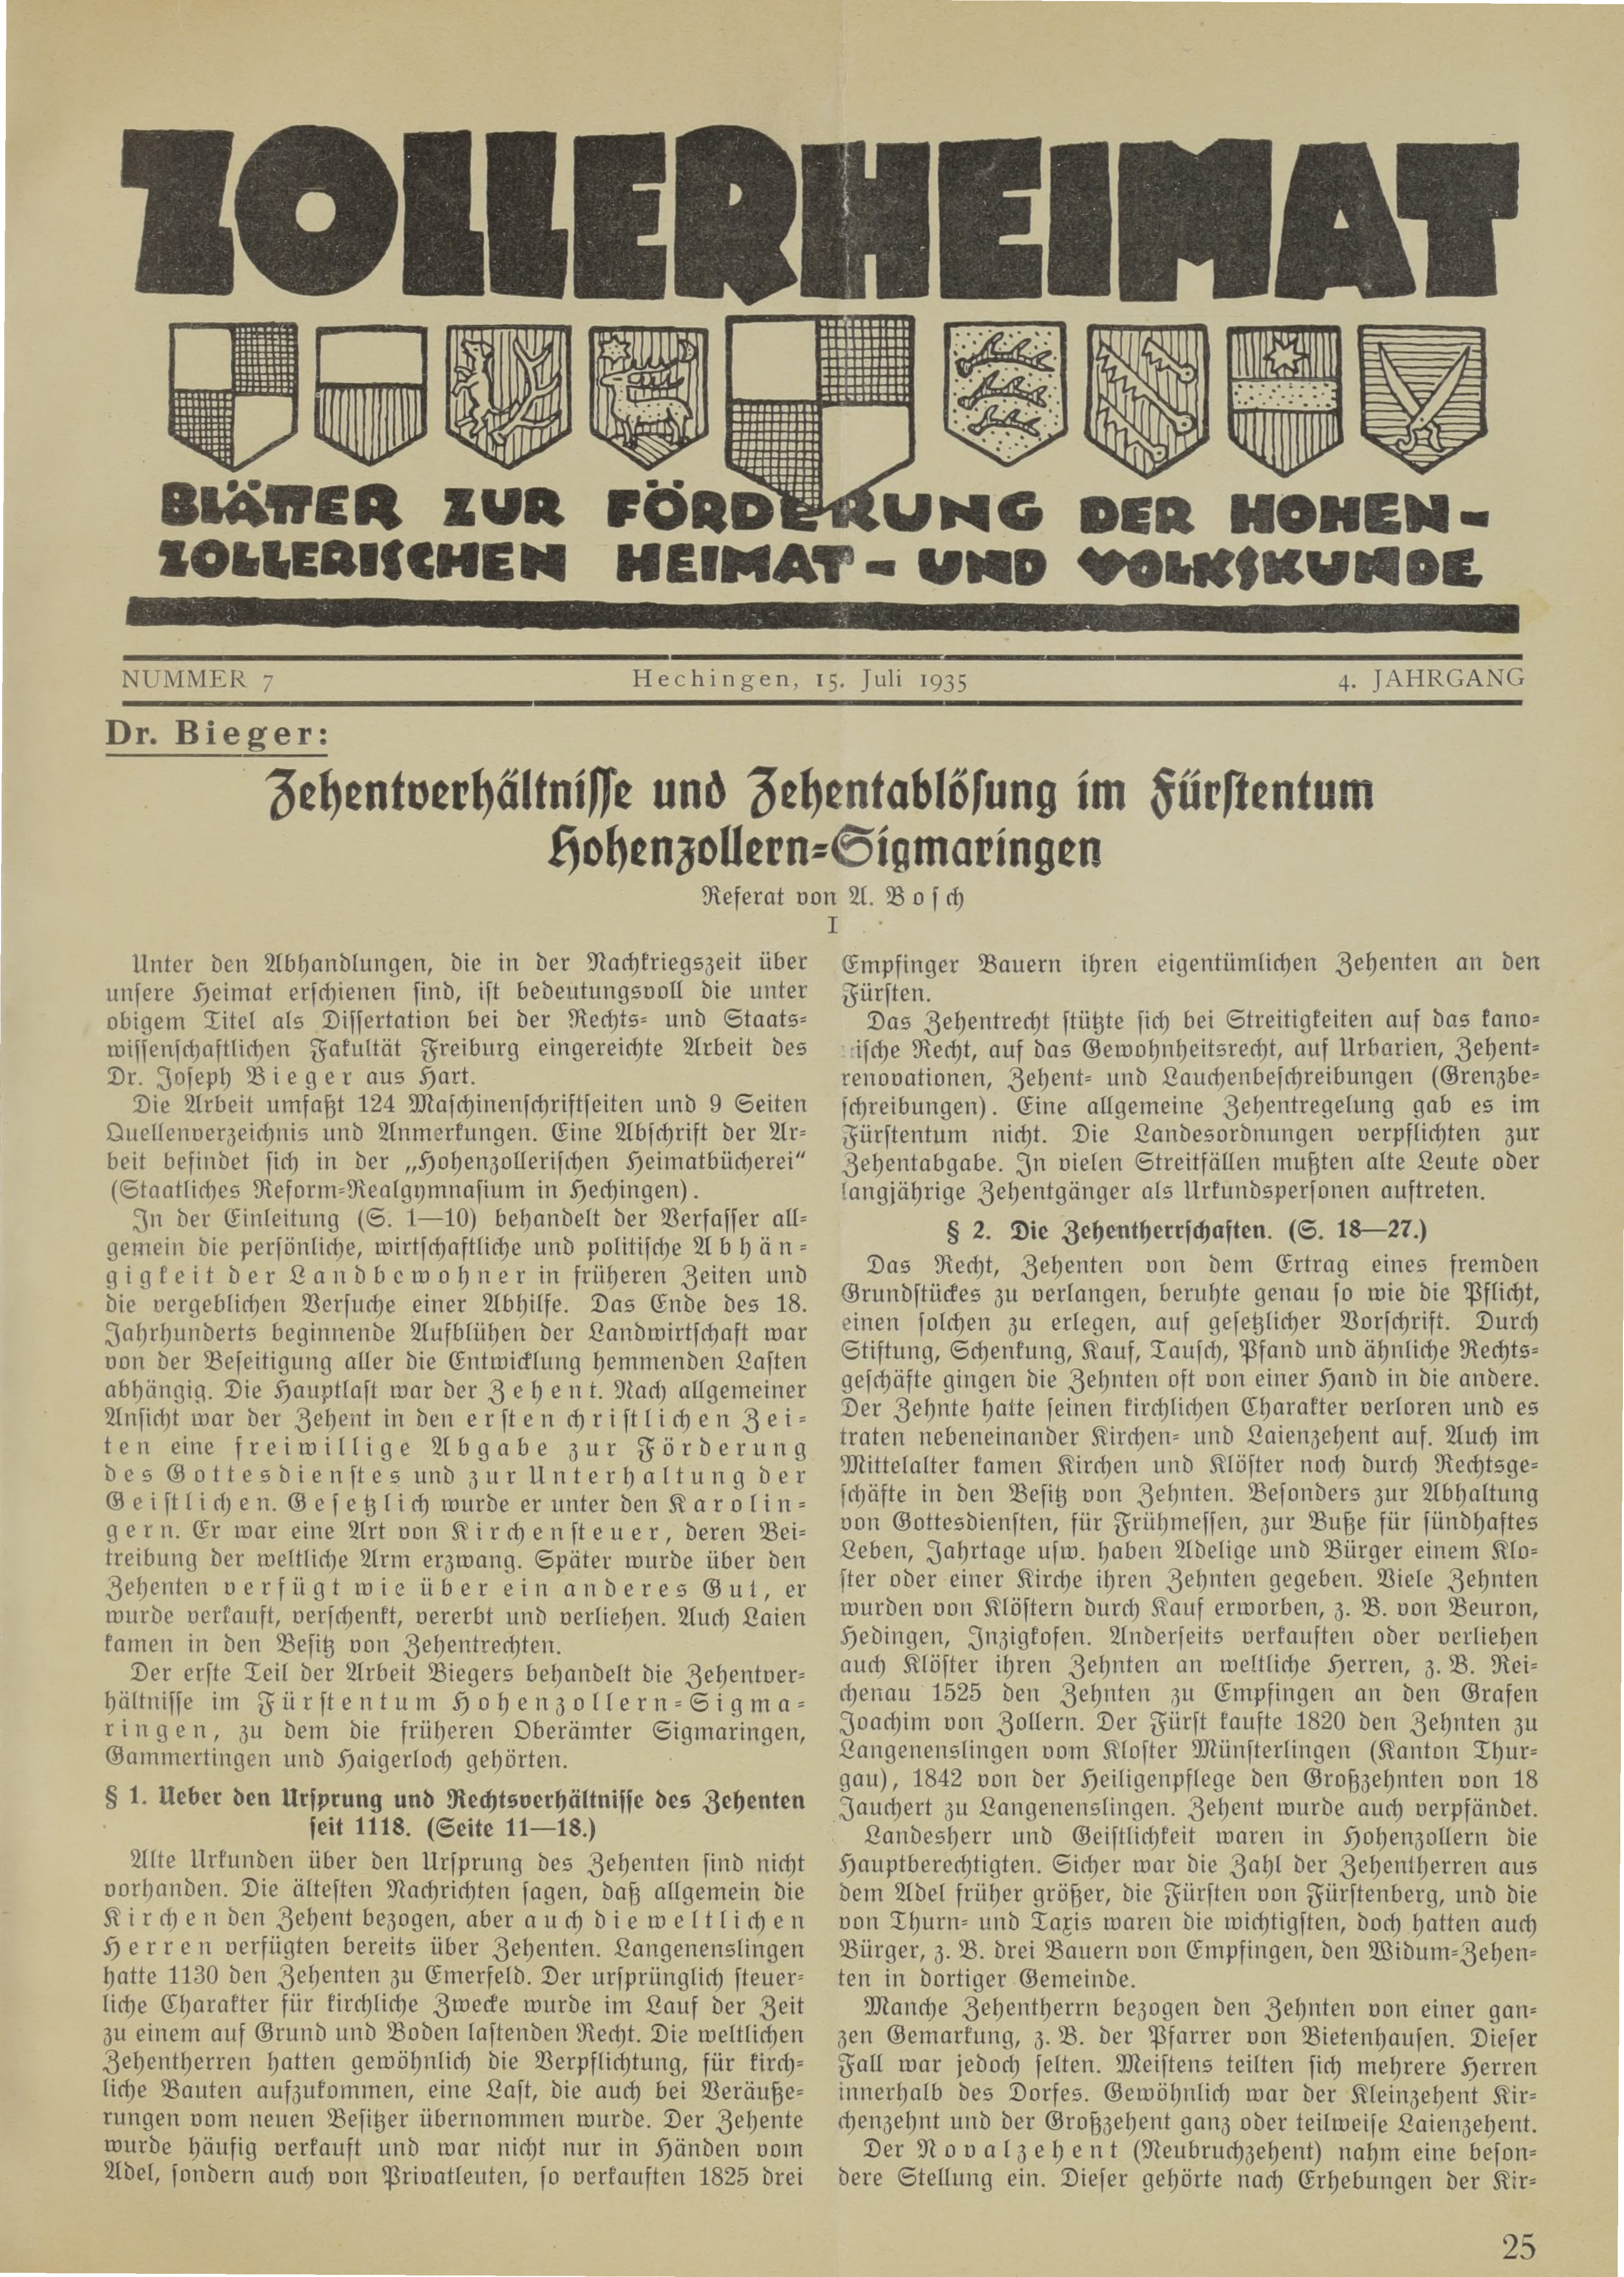                     Ansehen Bd. 4 Nr. 7 (1935): Zollerheimat
                